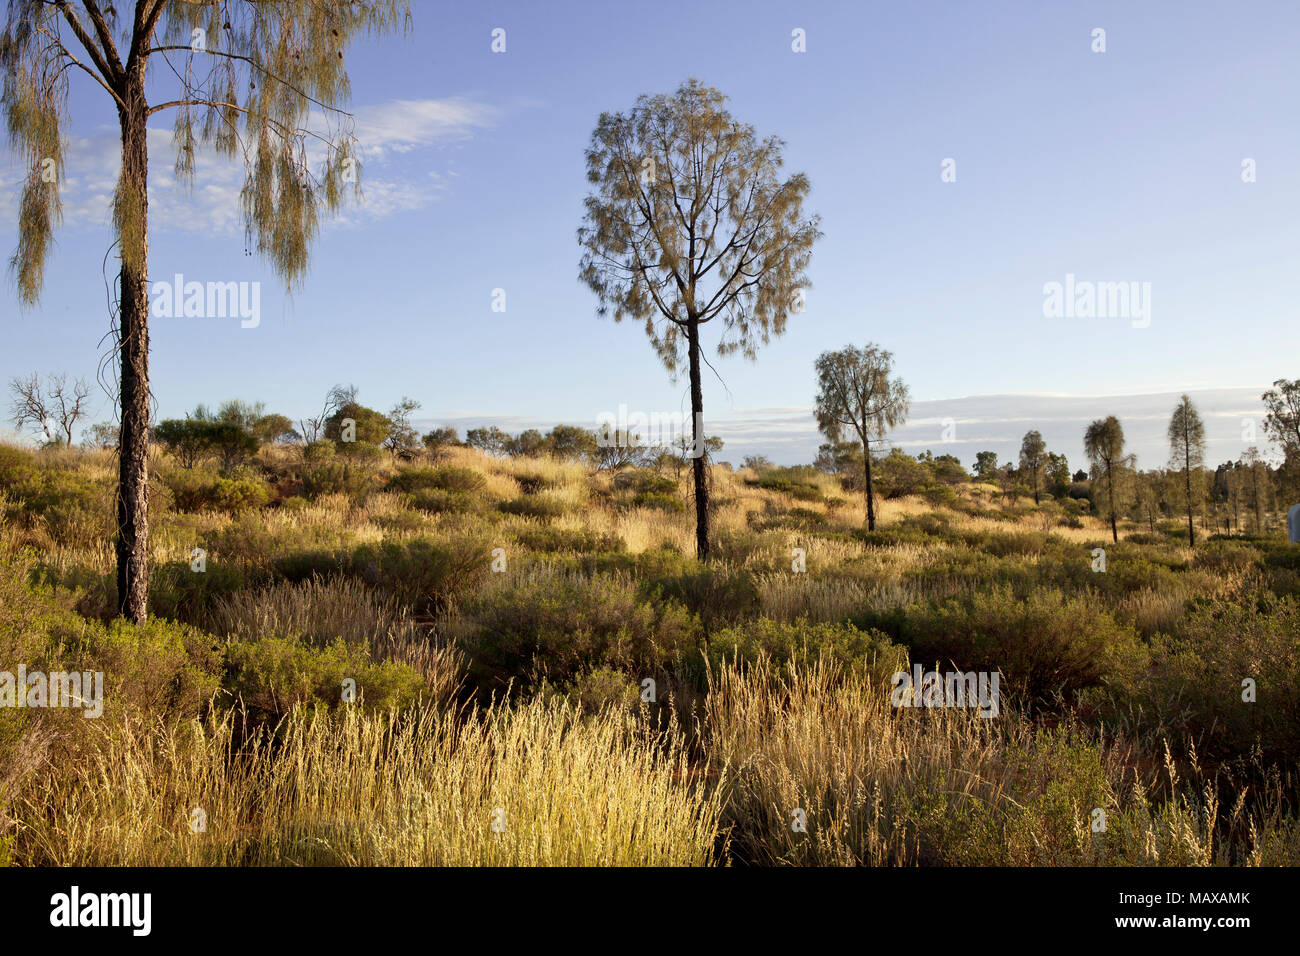 Tôt le matin, vue sur les arbres de la brousse près de ares Australie Territoire du nord rock Banque D'Images